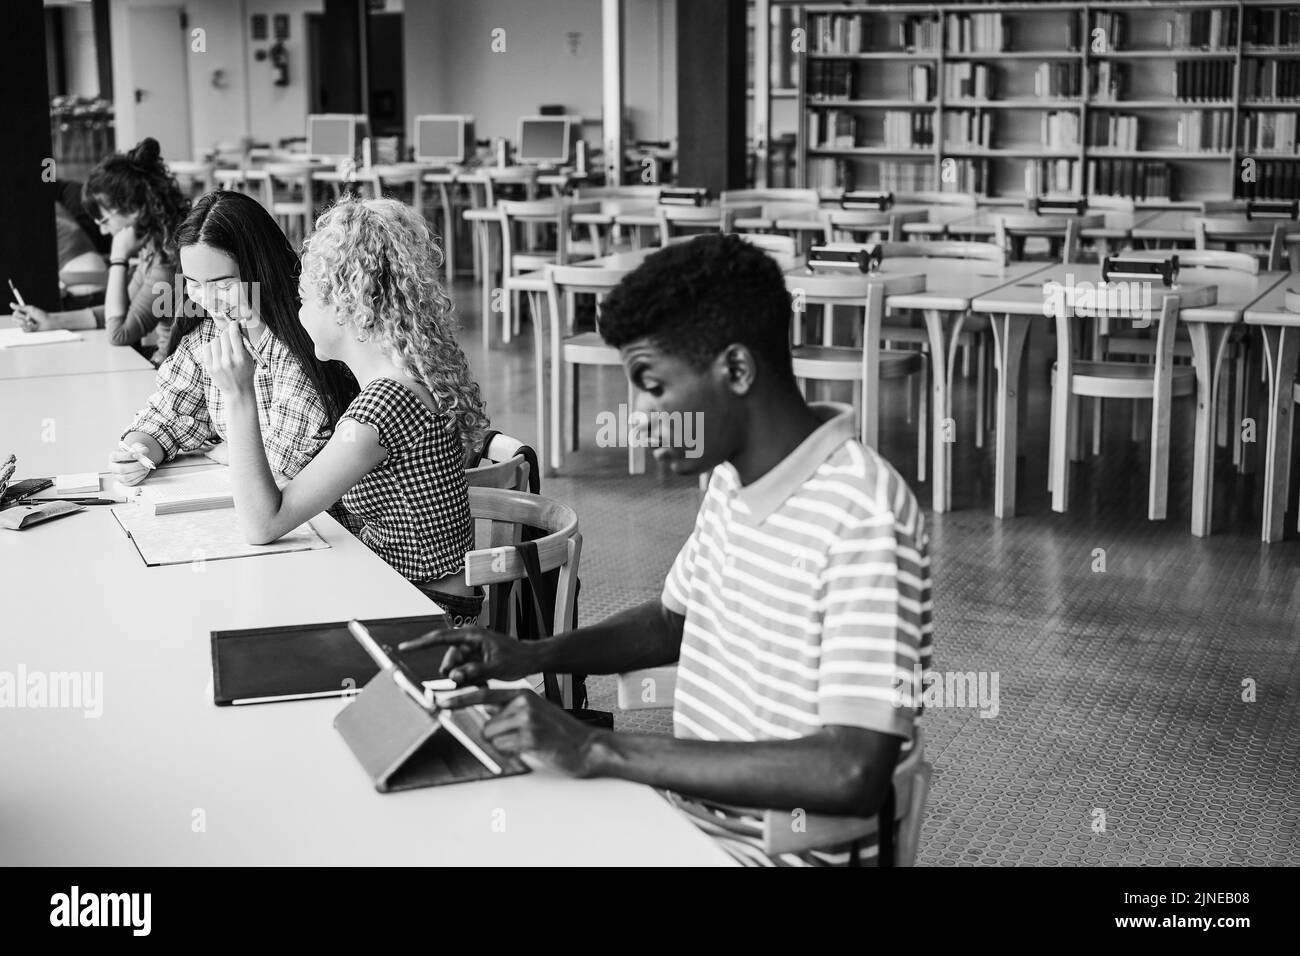 Junge multiethnische Gruppe von Studenten, die in der Universitätsbibliothek studieren - Fokus auf linkes Mädchengesicht - Schwarz-Weiß-Schnitt Stockfoto